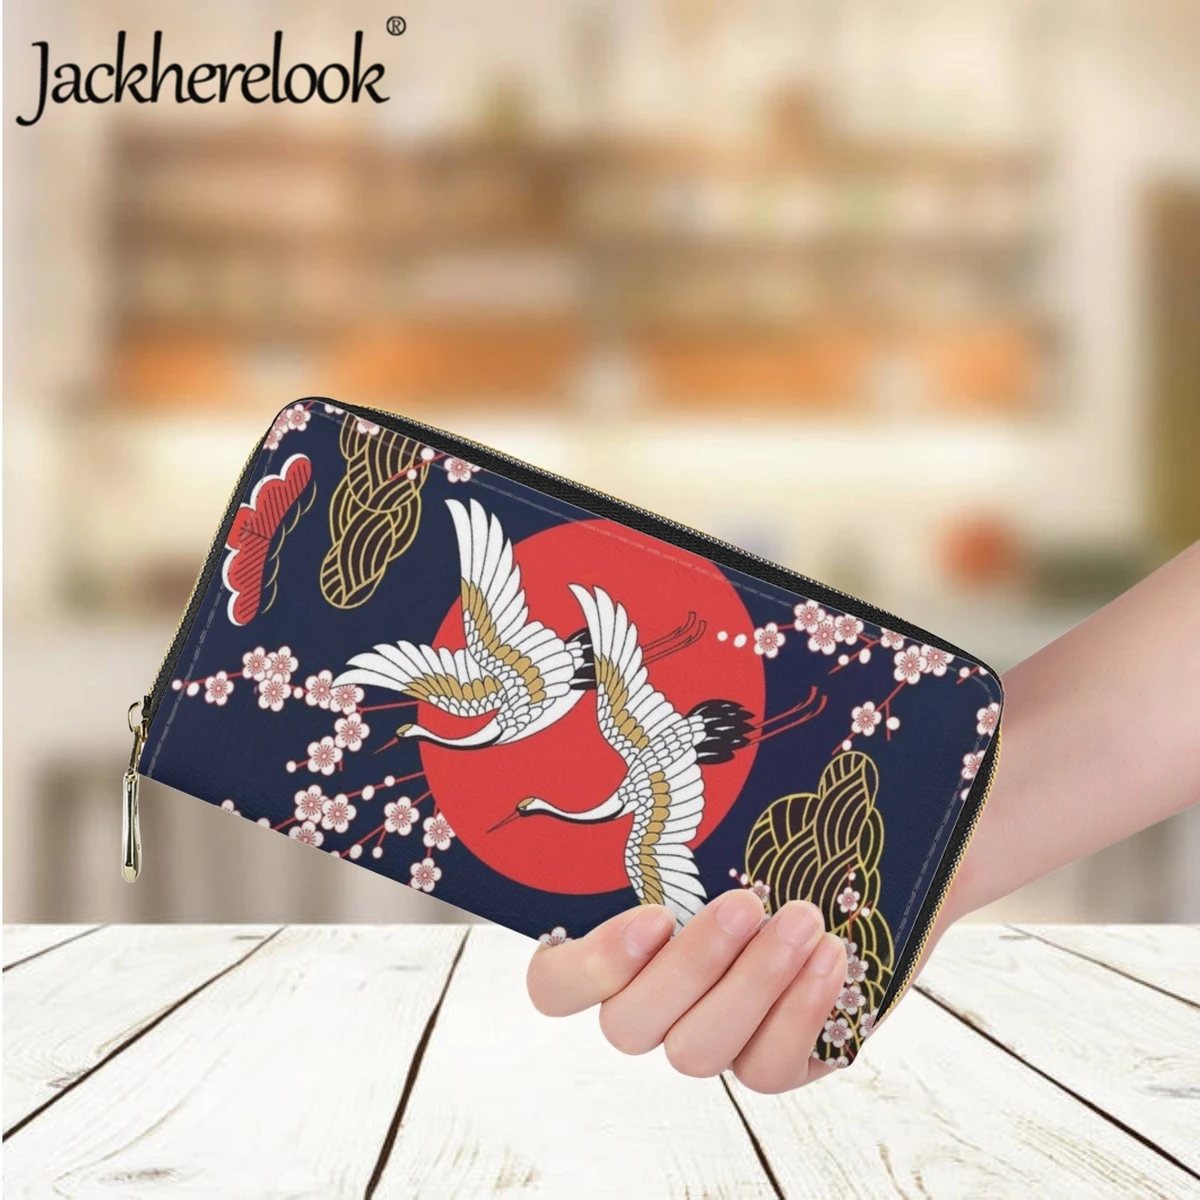 Jackherelook Японский стиль, кошелек с принтом Журавля и животных, женский модный Ретро-женский кожаный роскошный кошелек, держатель для банковских карт - 0